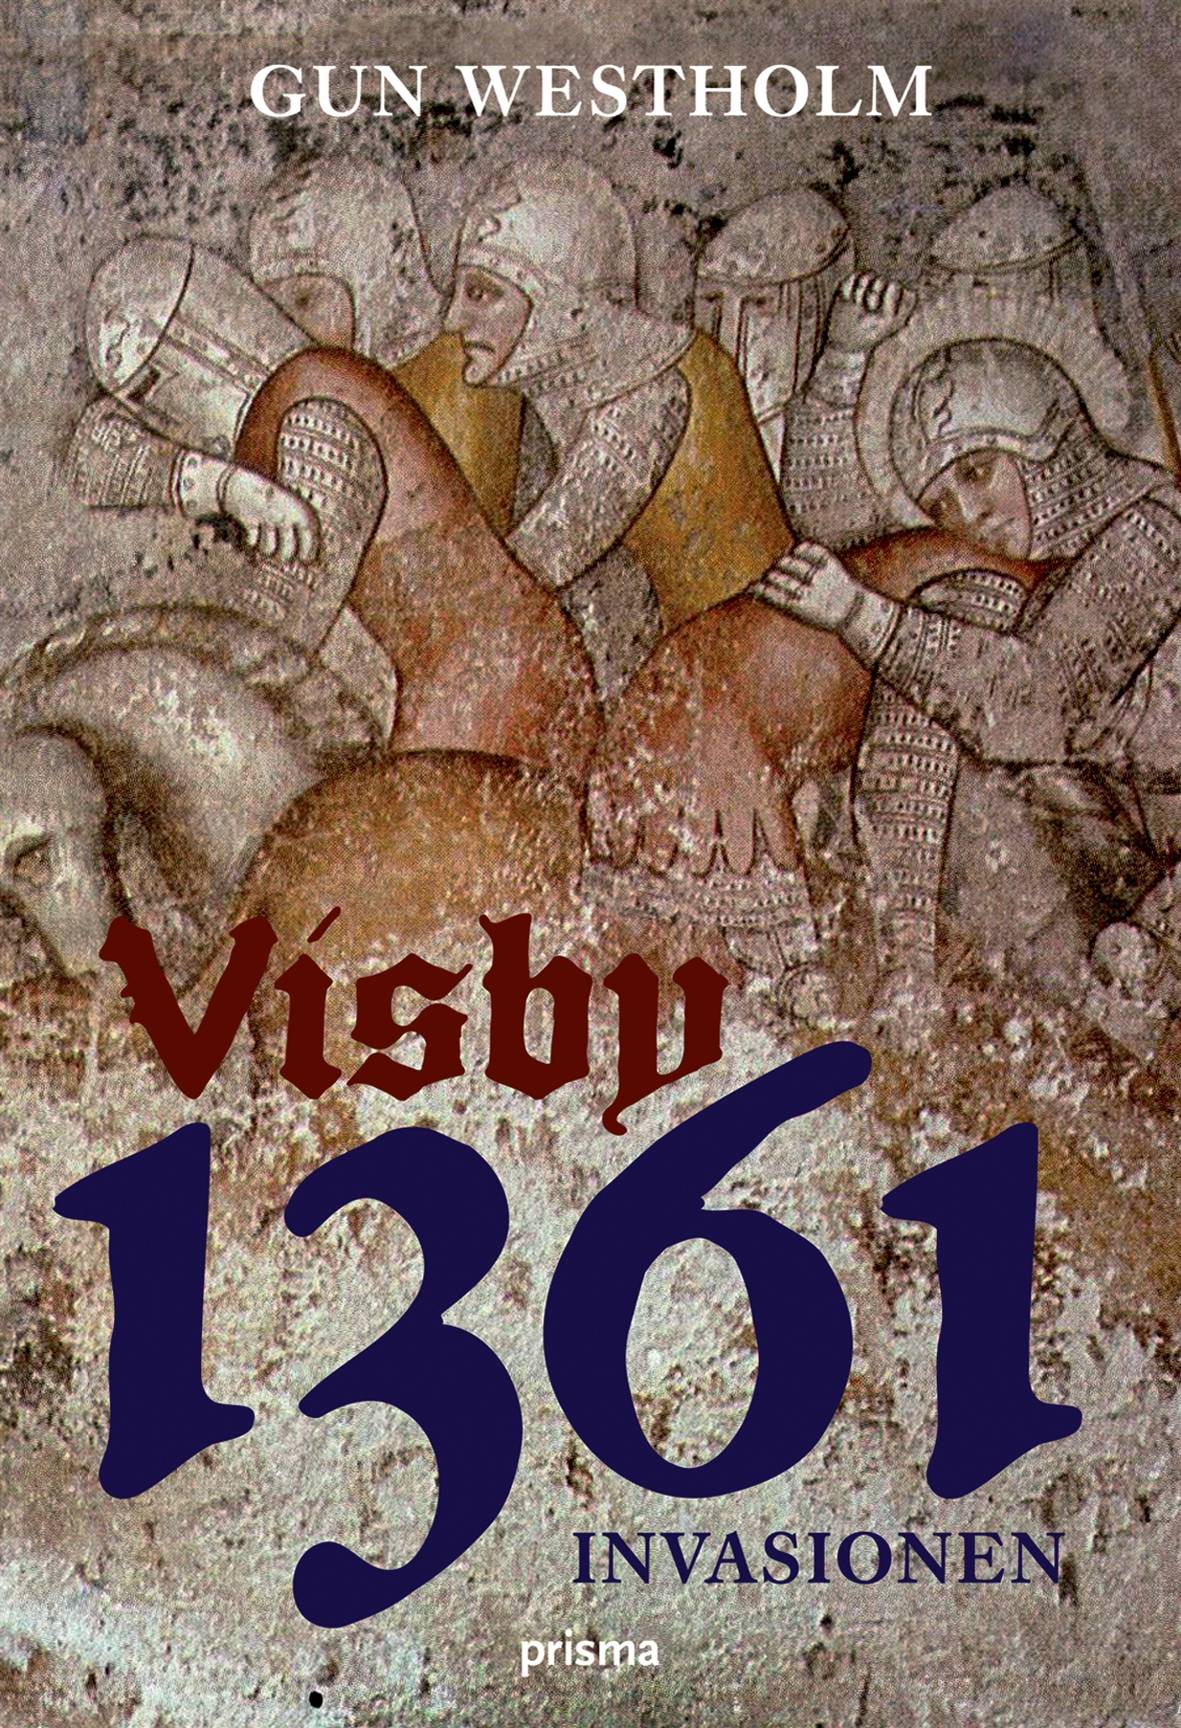 Visby 1361 : invasionen